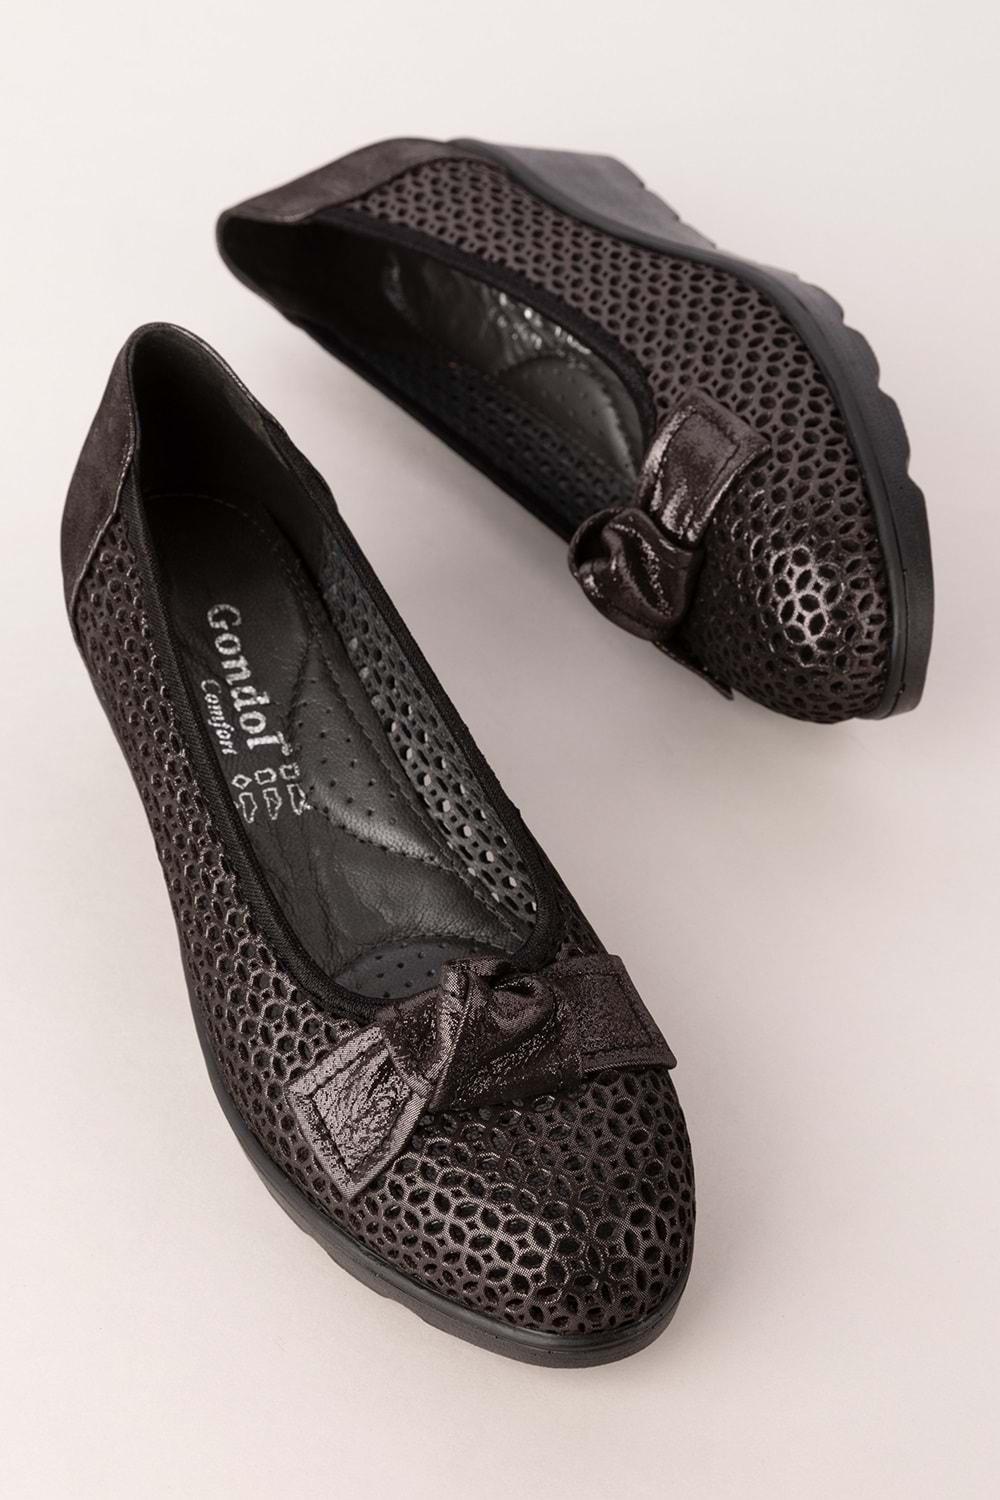 Gondol Kadın Hakiki Deri Dolgu Topuk Rahat Şık Anne Ayakkabısı ell.6189 - Siyah Sim - 40